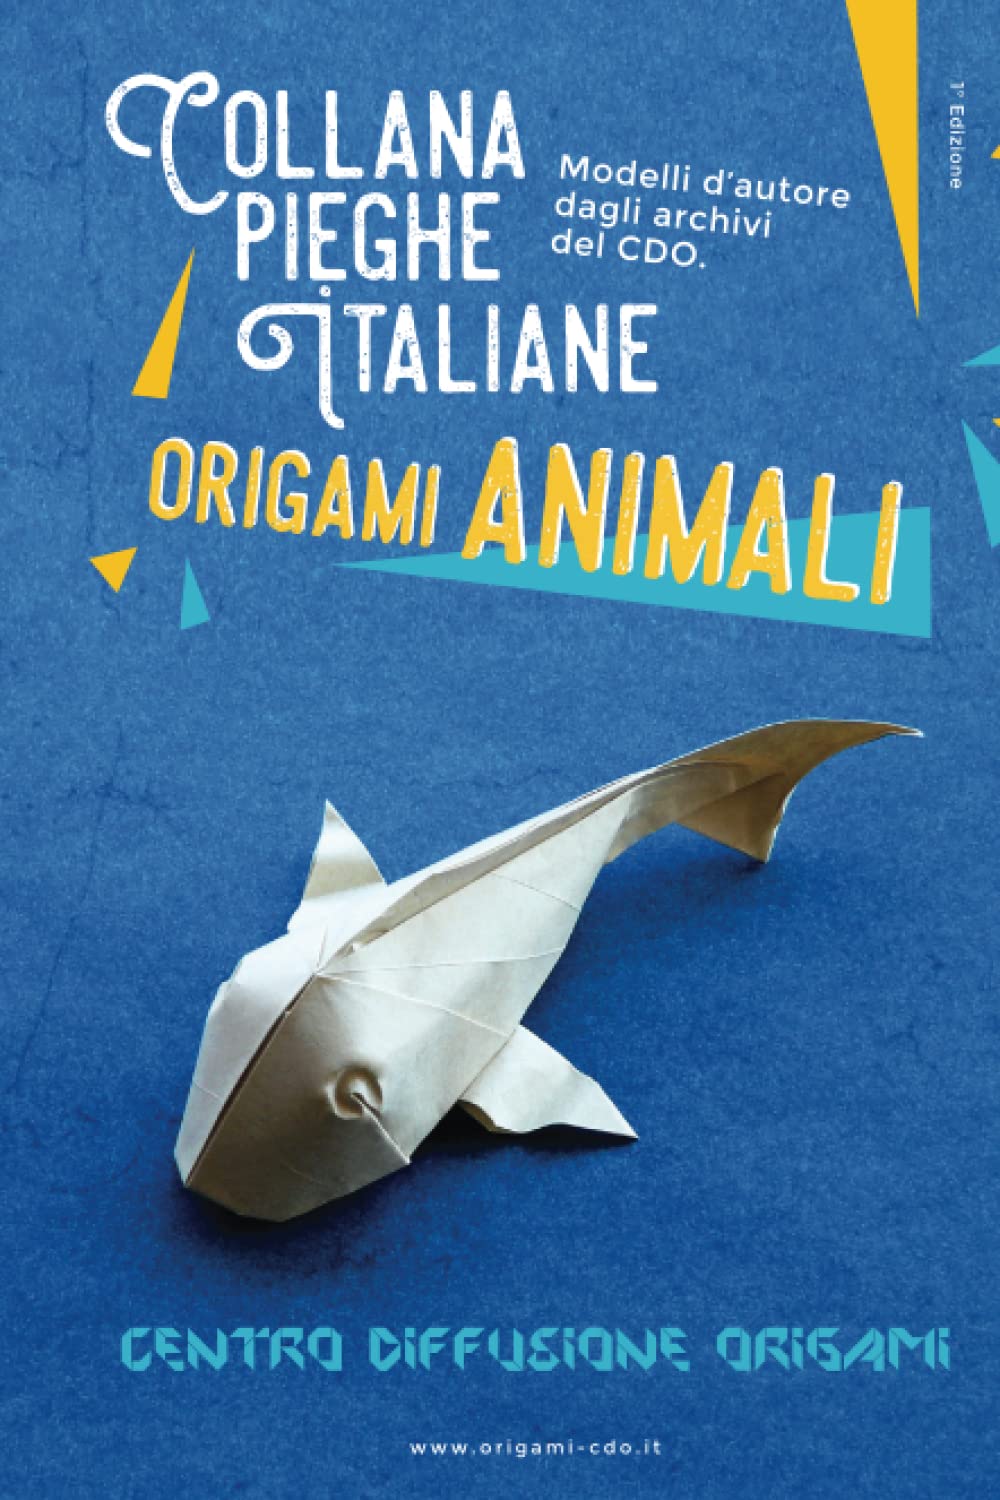 Collana pieghe Italiane - origami ANIMALI : page 134.